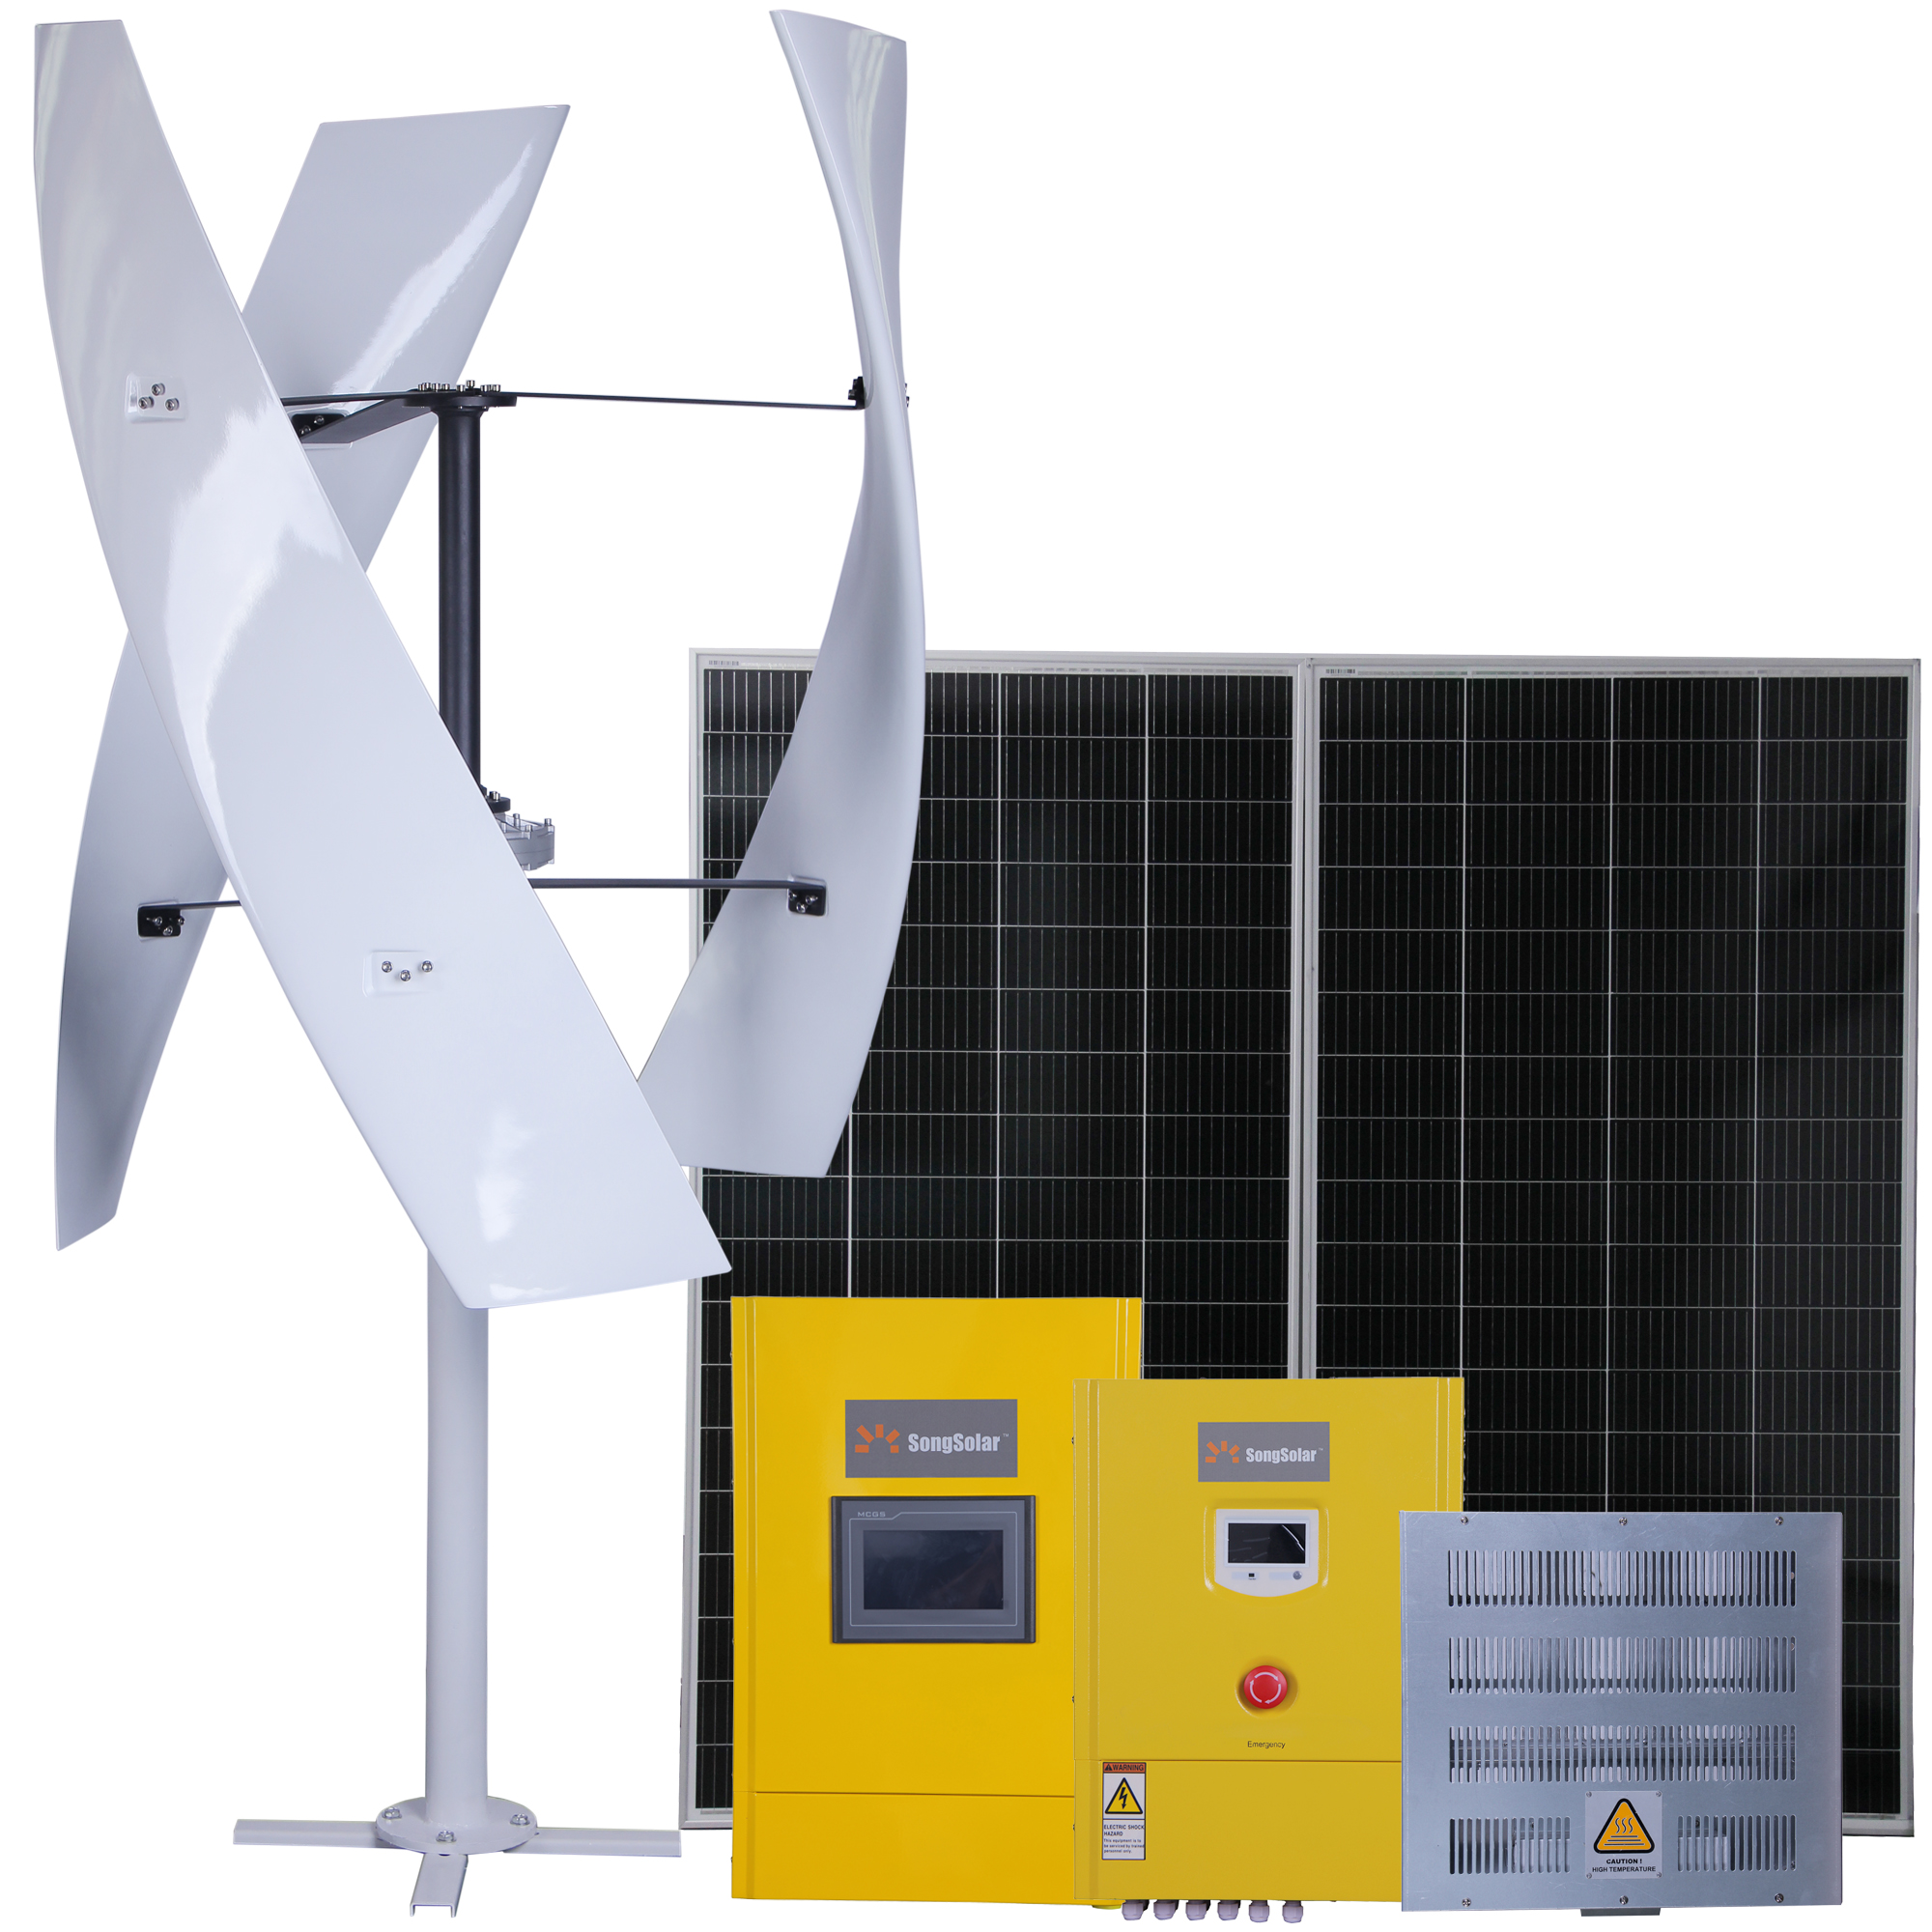 수직 에너지 시스템 풍력 터빈 발전기 및 태양광 패널 전력 저장 장치를 갖춘 하이브리드 Off/ON 그리드 시스템